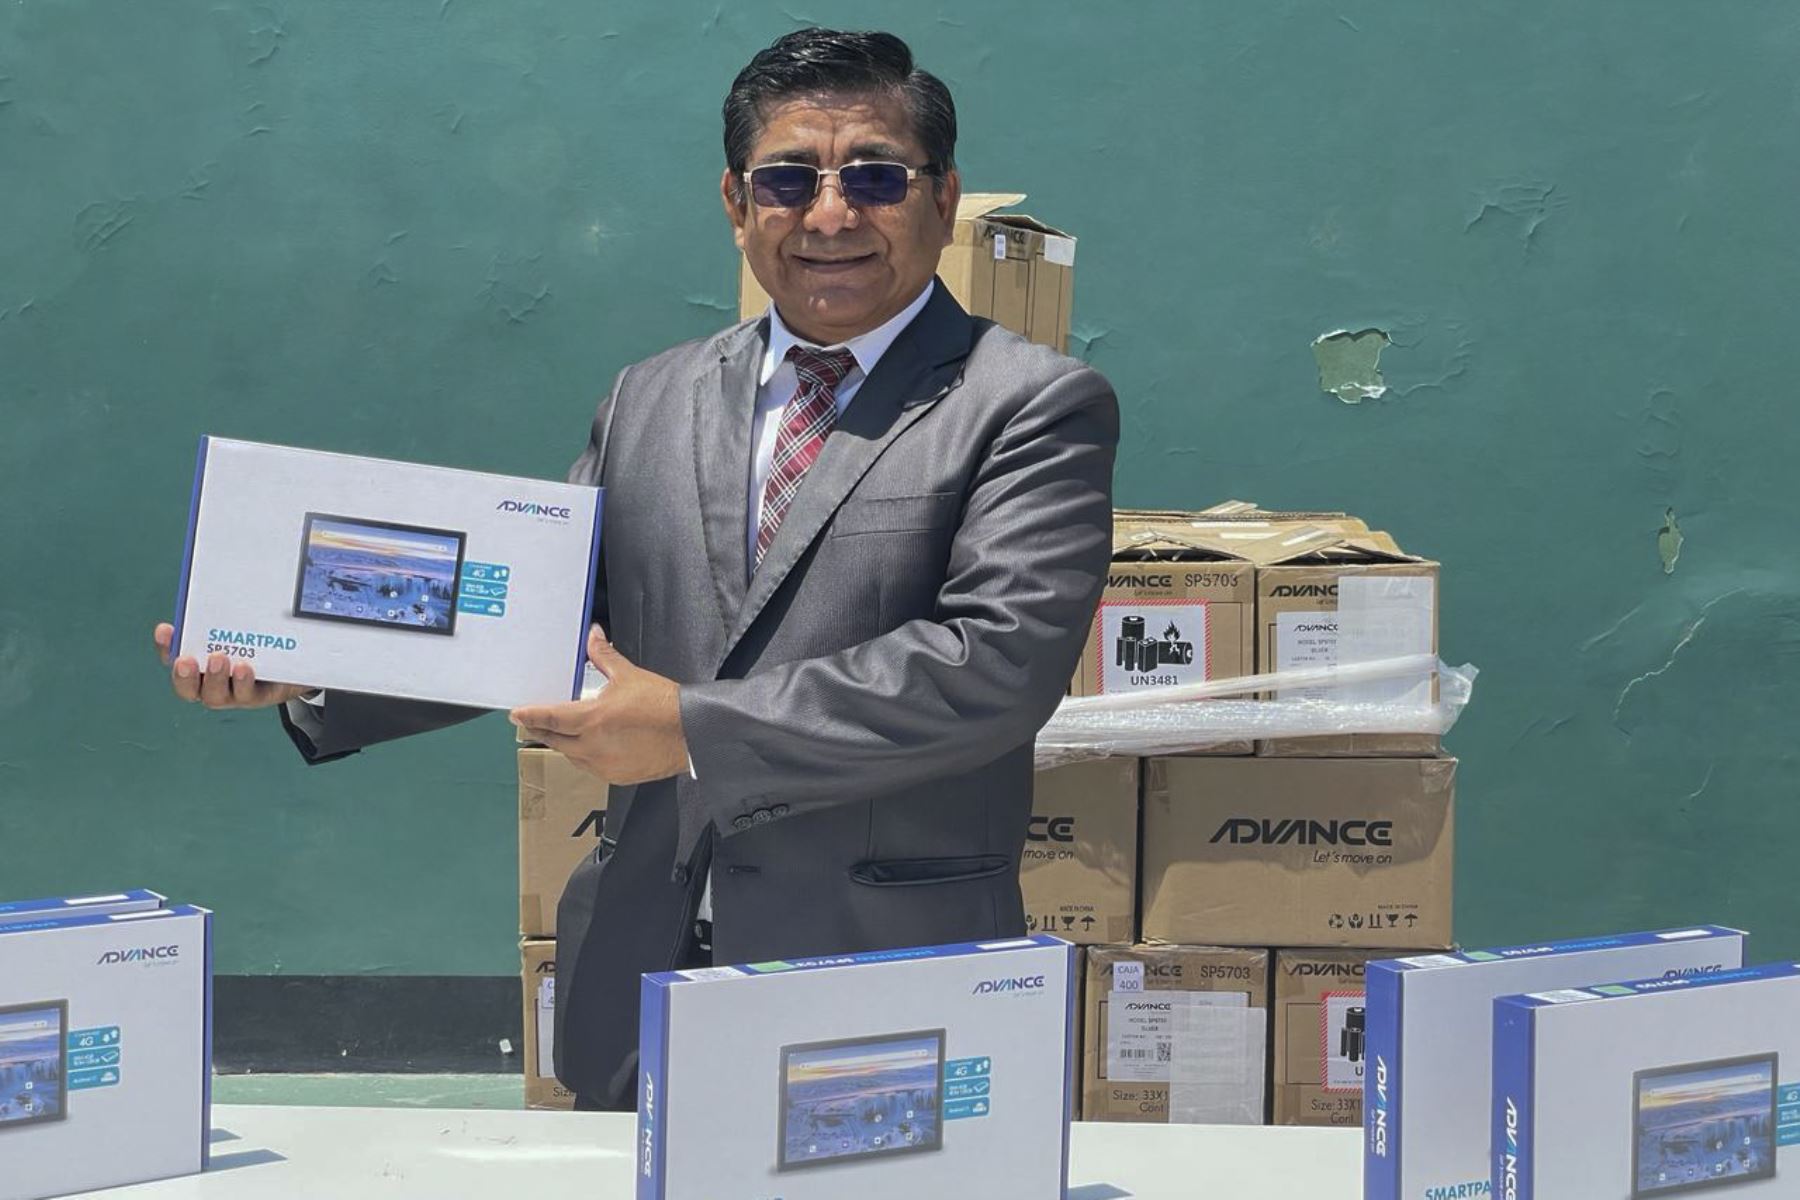 Con este último lote suman más de 7500 tabletas que han sido entregadas por Pronatel a la región Lambayeque para uso educativo de los escolares.